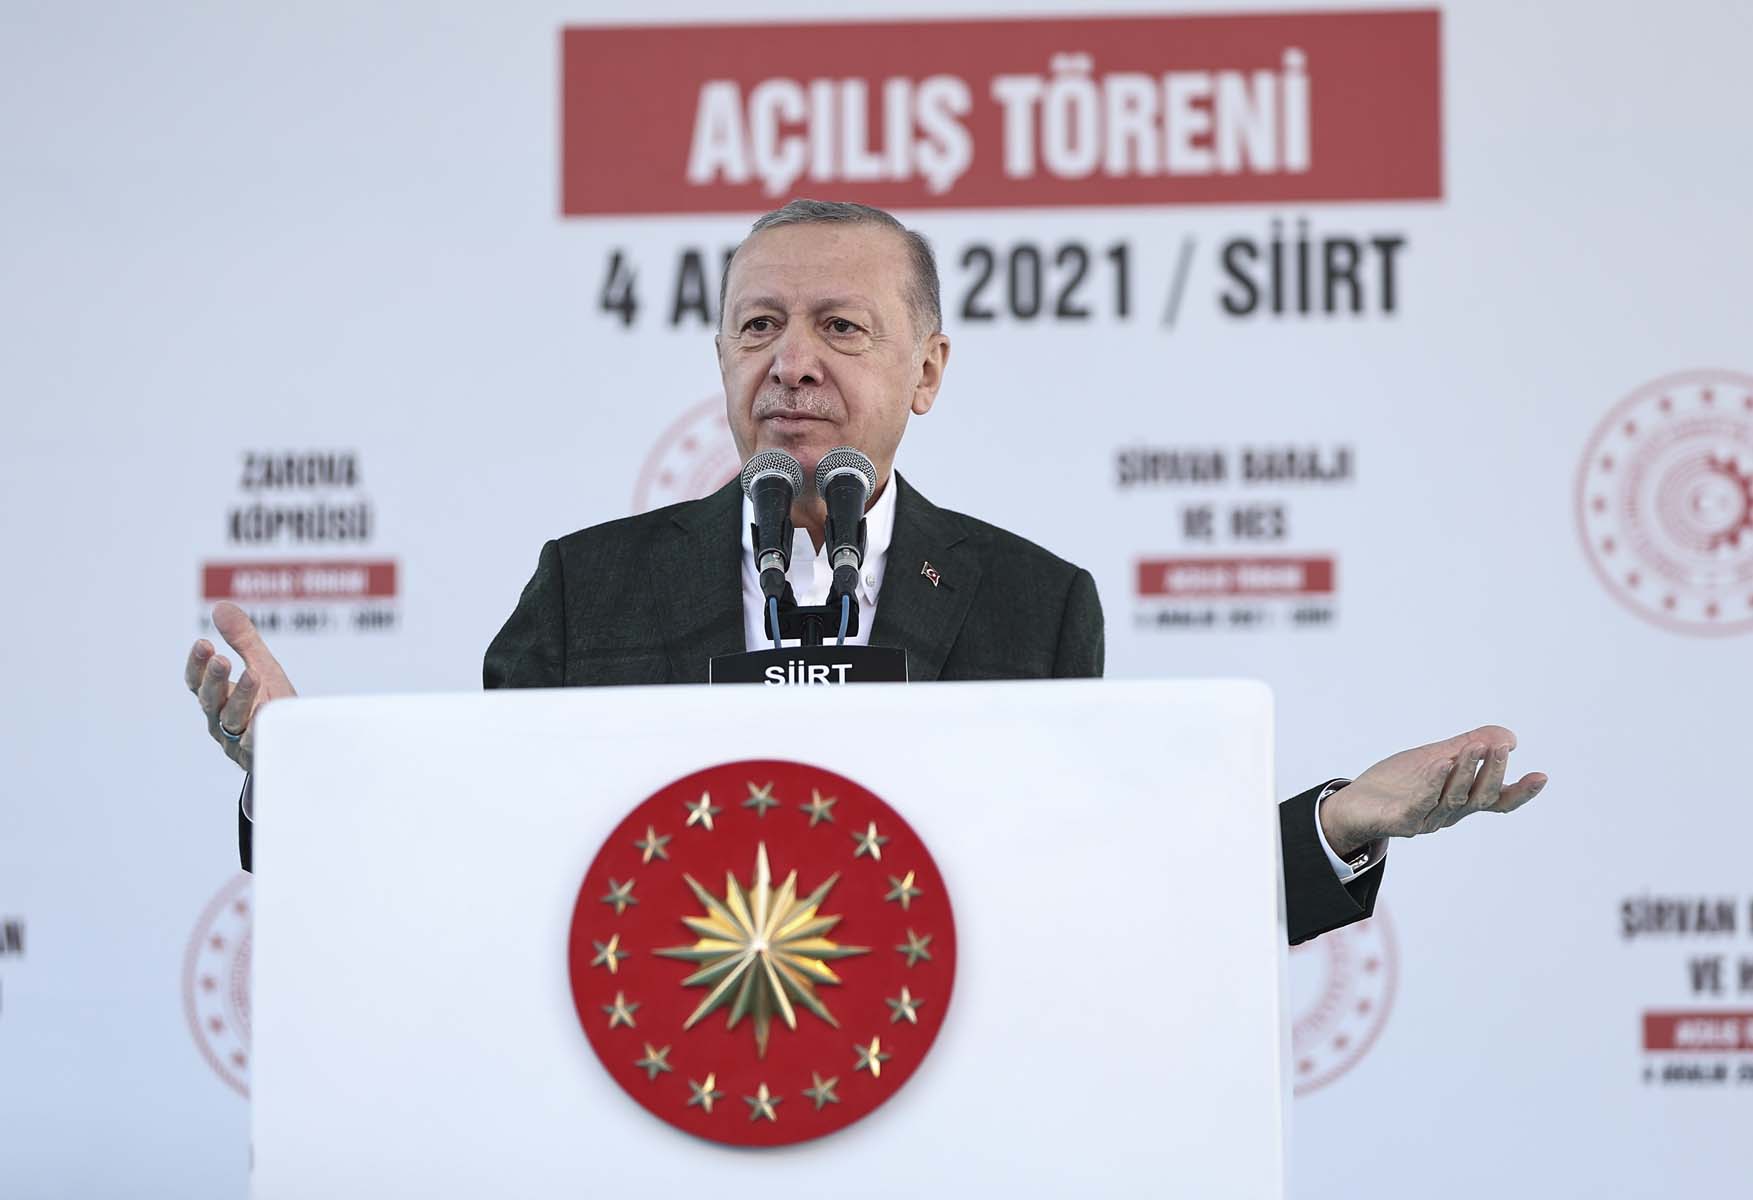 20211204-2-51168675-Cumhurbaşkanı Erdoğan, Siirt'te toplu açılış töreninde konuştu: Asgari ücreti kayıpları telafi edecek düzeyde belirleyerek insanlarımızı ferahlatacağız.jpg